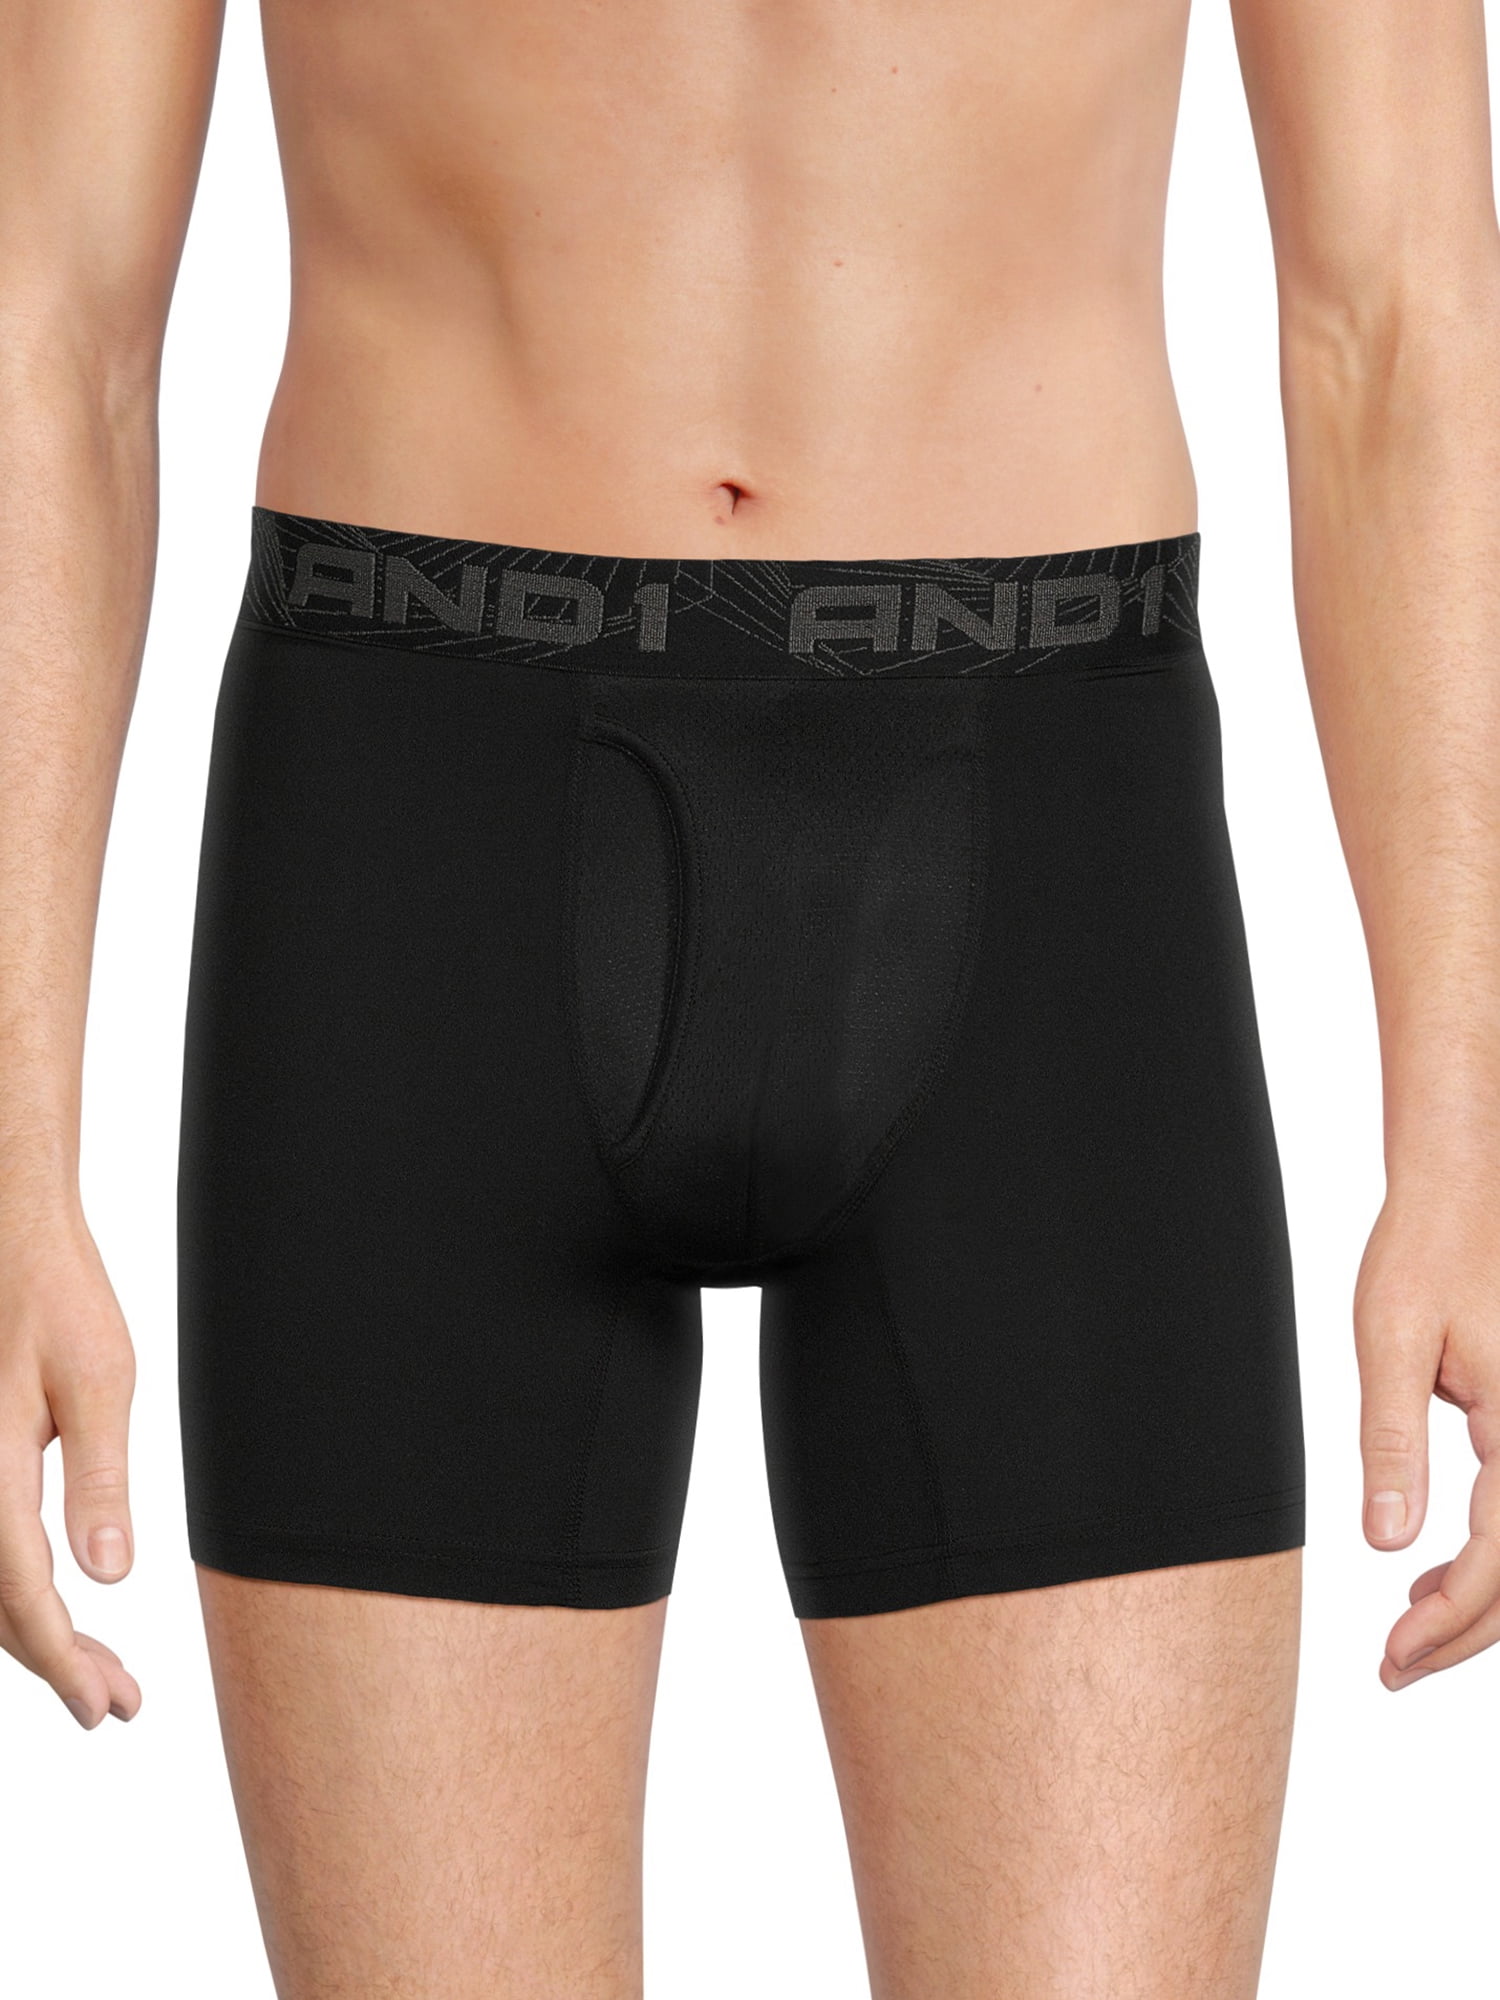 AND1 Men's Underwear Pro Platinum Boxer Briefs, 6 Pack, 6